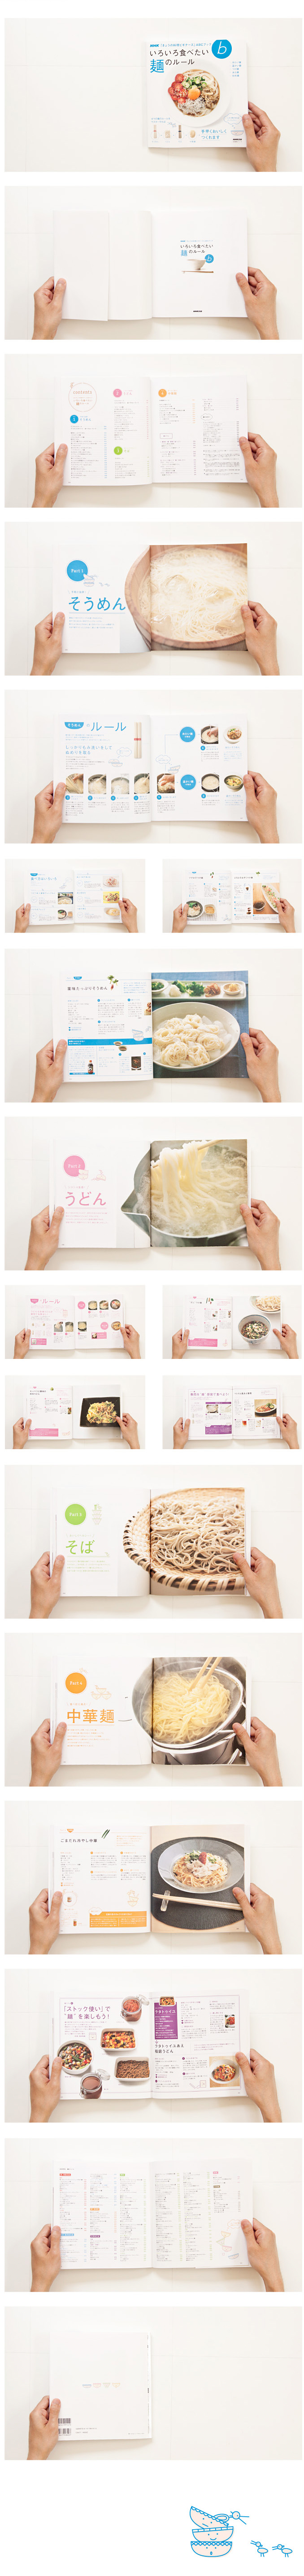 NHK「きょうの料理ビギナーズ」ABCブック いろいろ食べたい 麺のルール